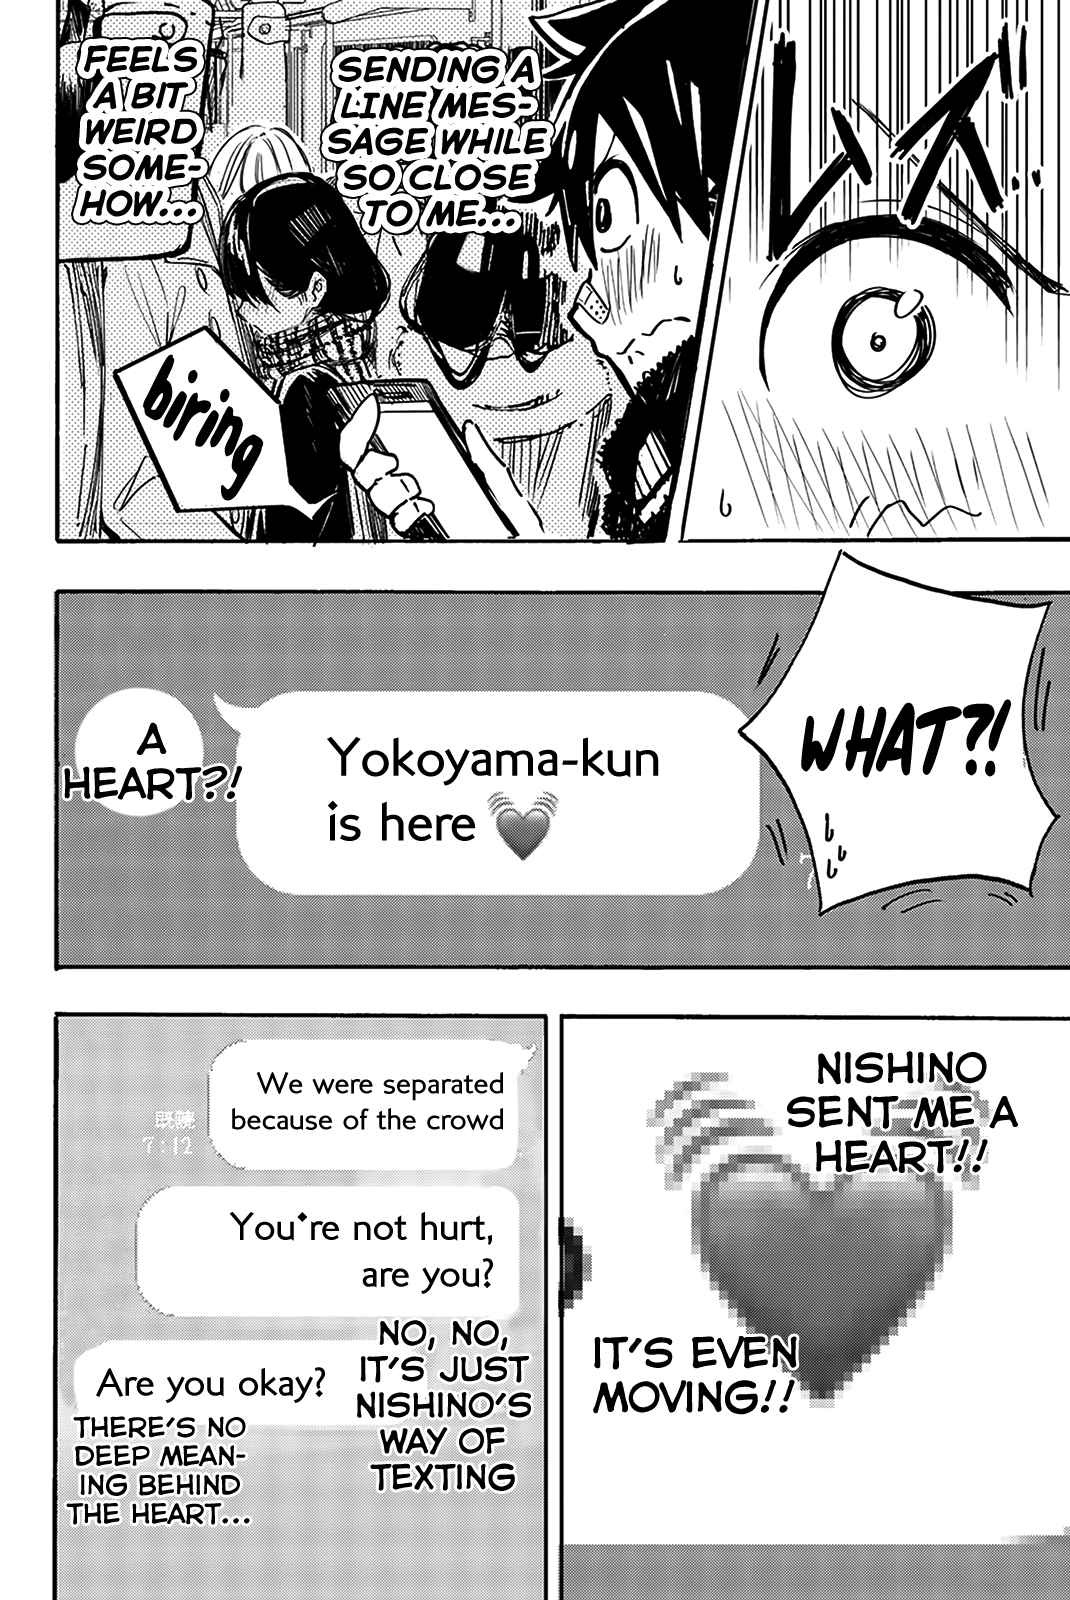 Koitsu, Ore No Koto Suki Nanoka?! Vol. 1 Ch. 8 Nishino san and the LINE Message